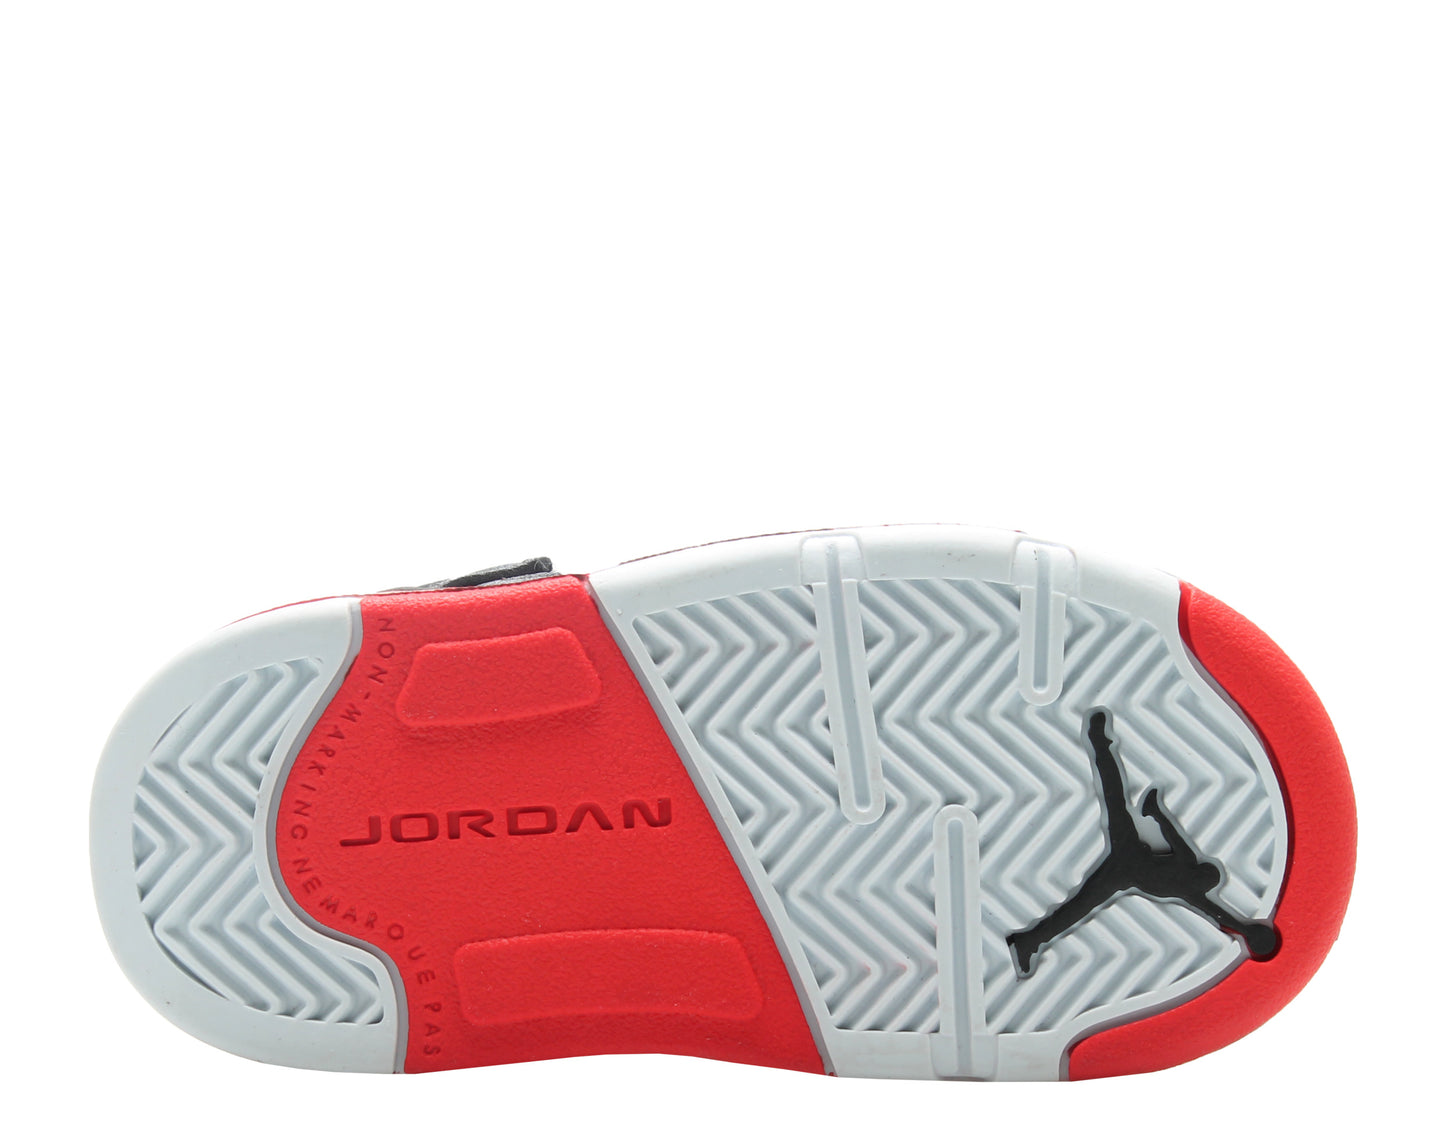 Nike Jordan 5 Retro (TD) Satin Black/Red Toddler Boys Basketball Shoe 440890-006